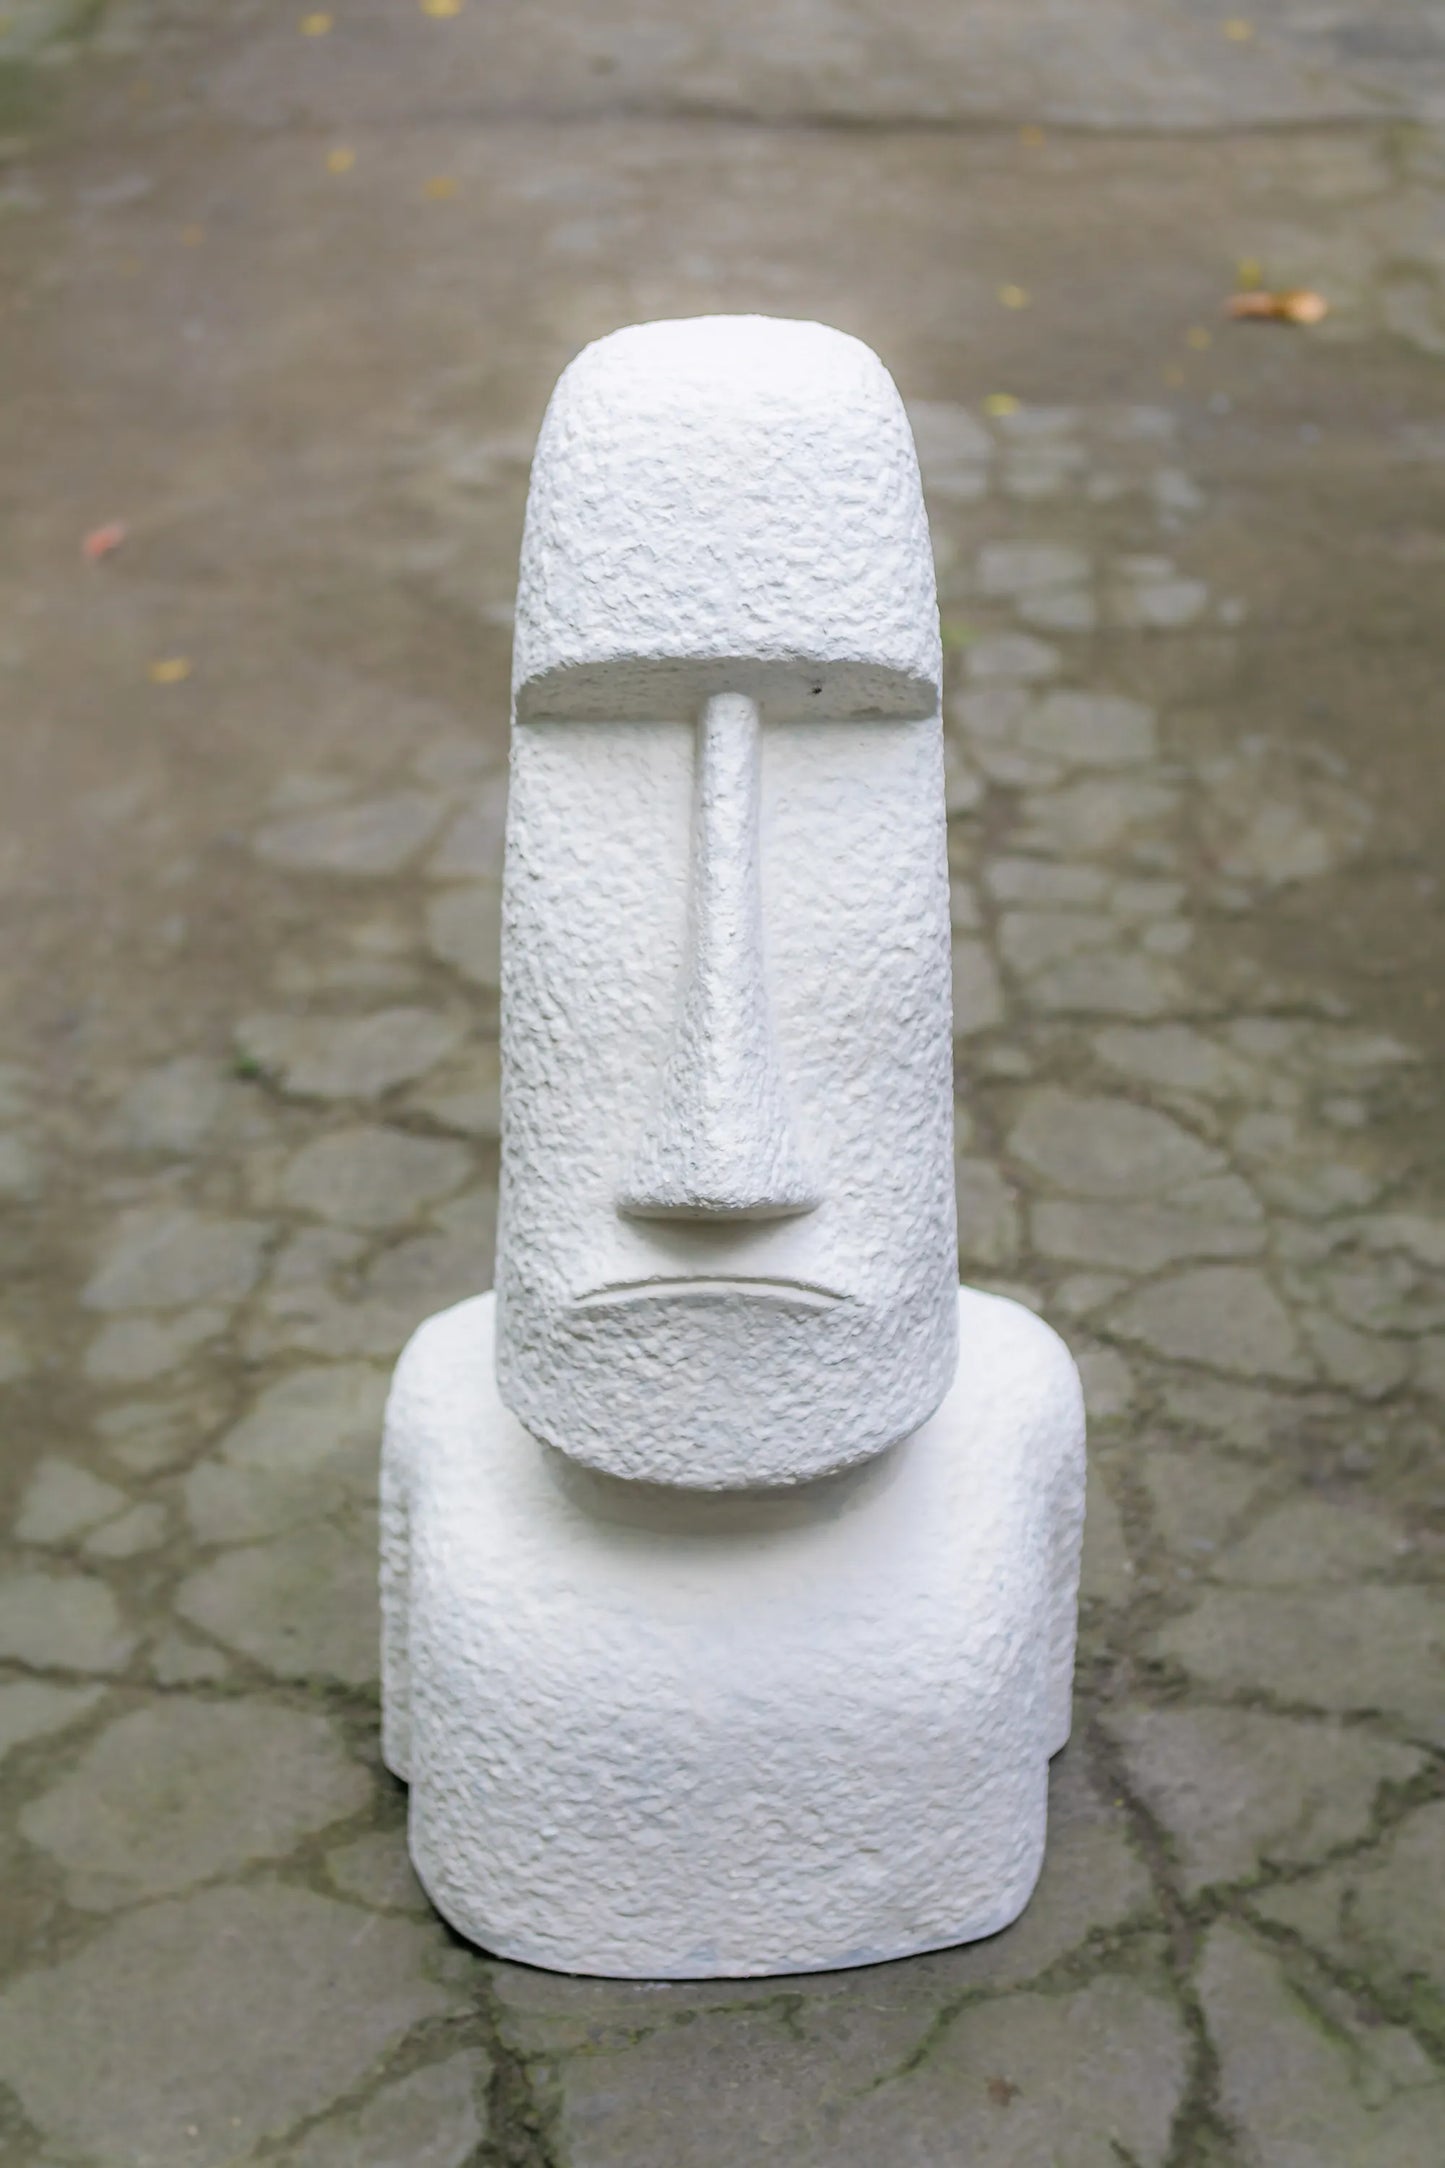 Moai Easter Island Head - Small